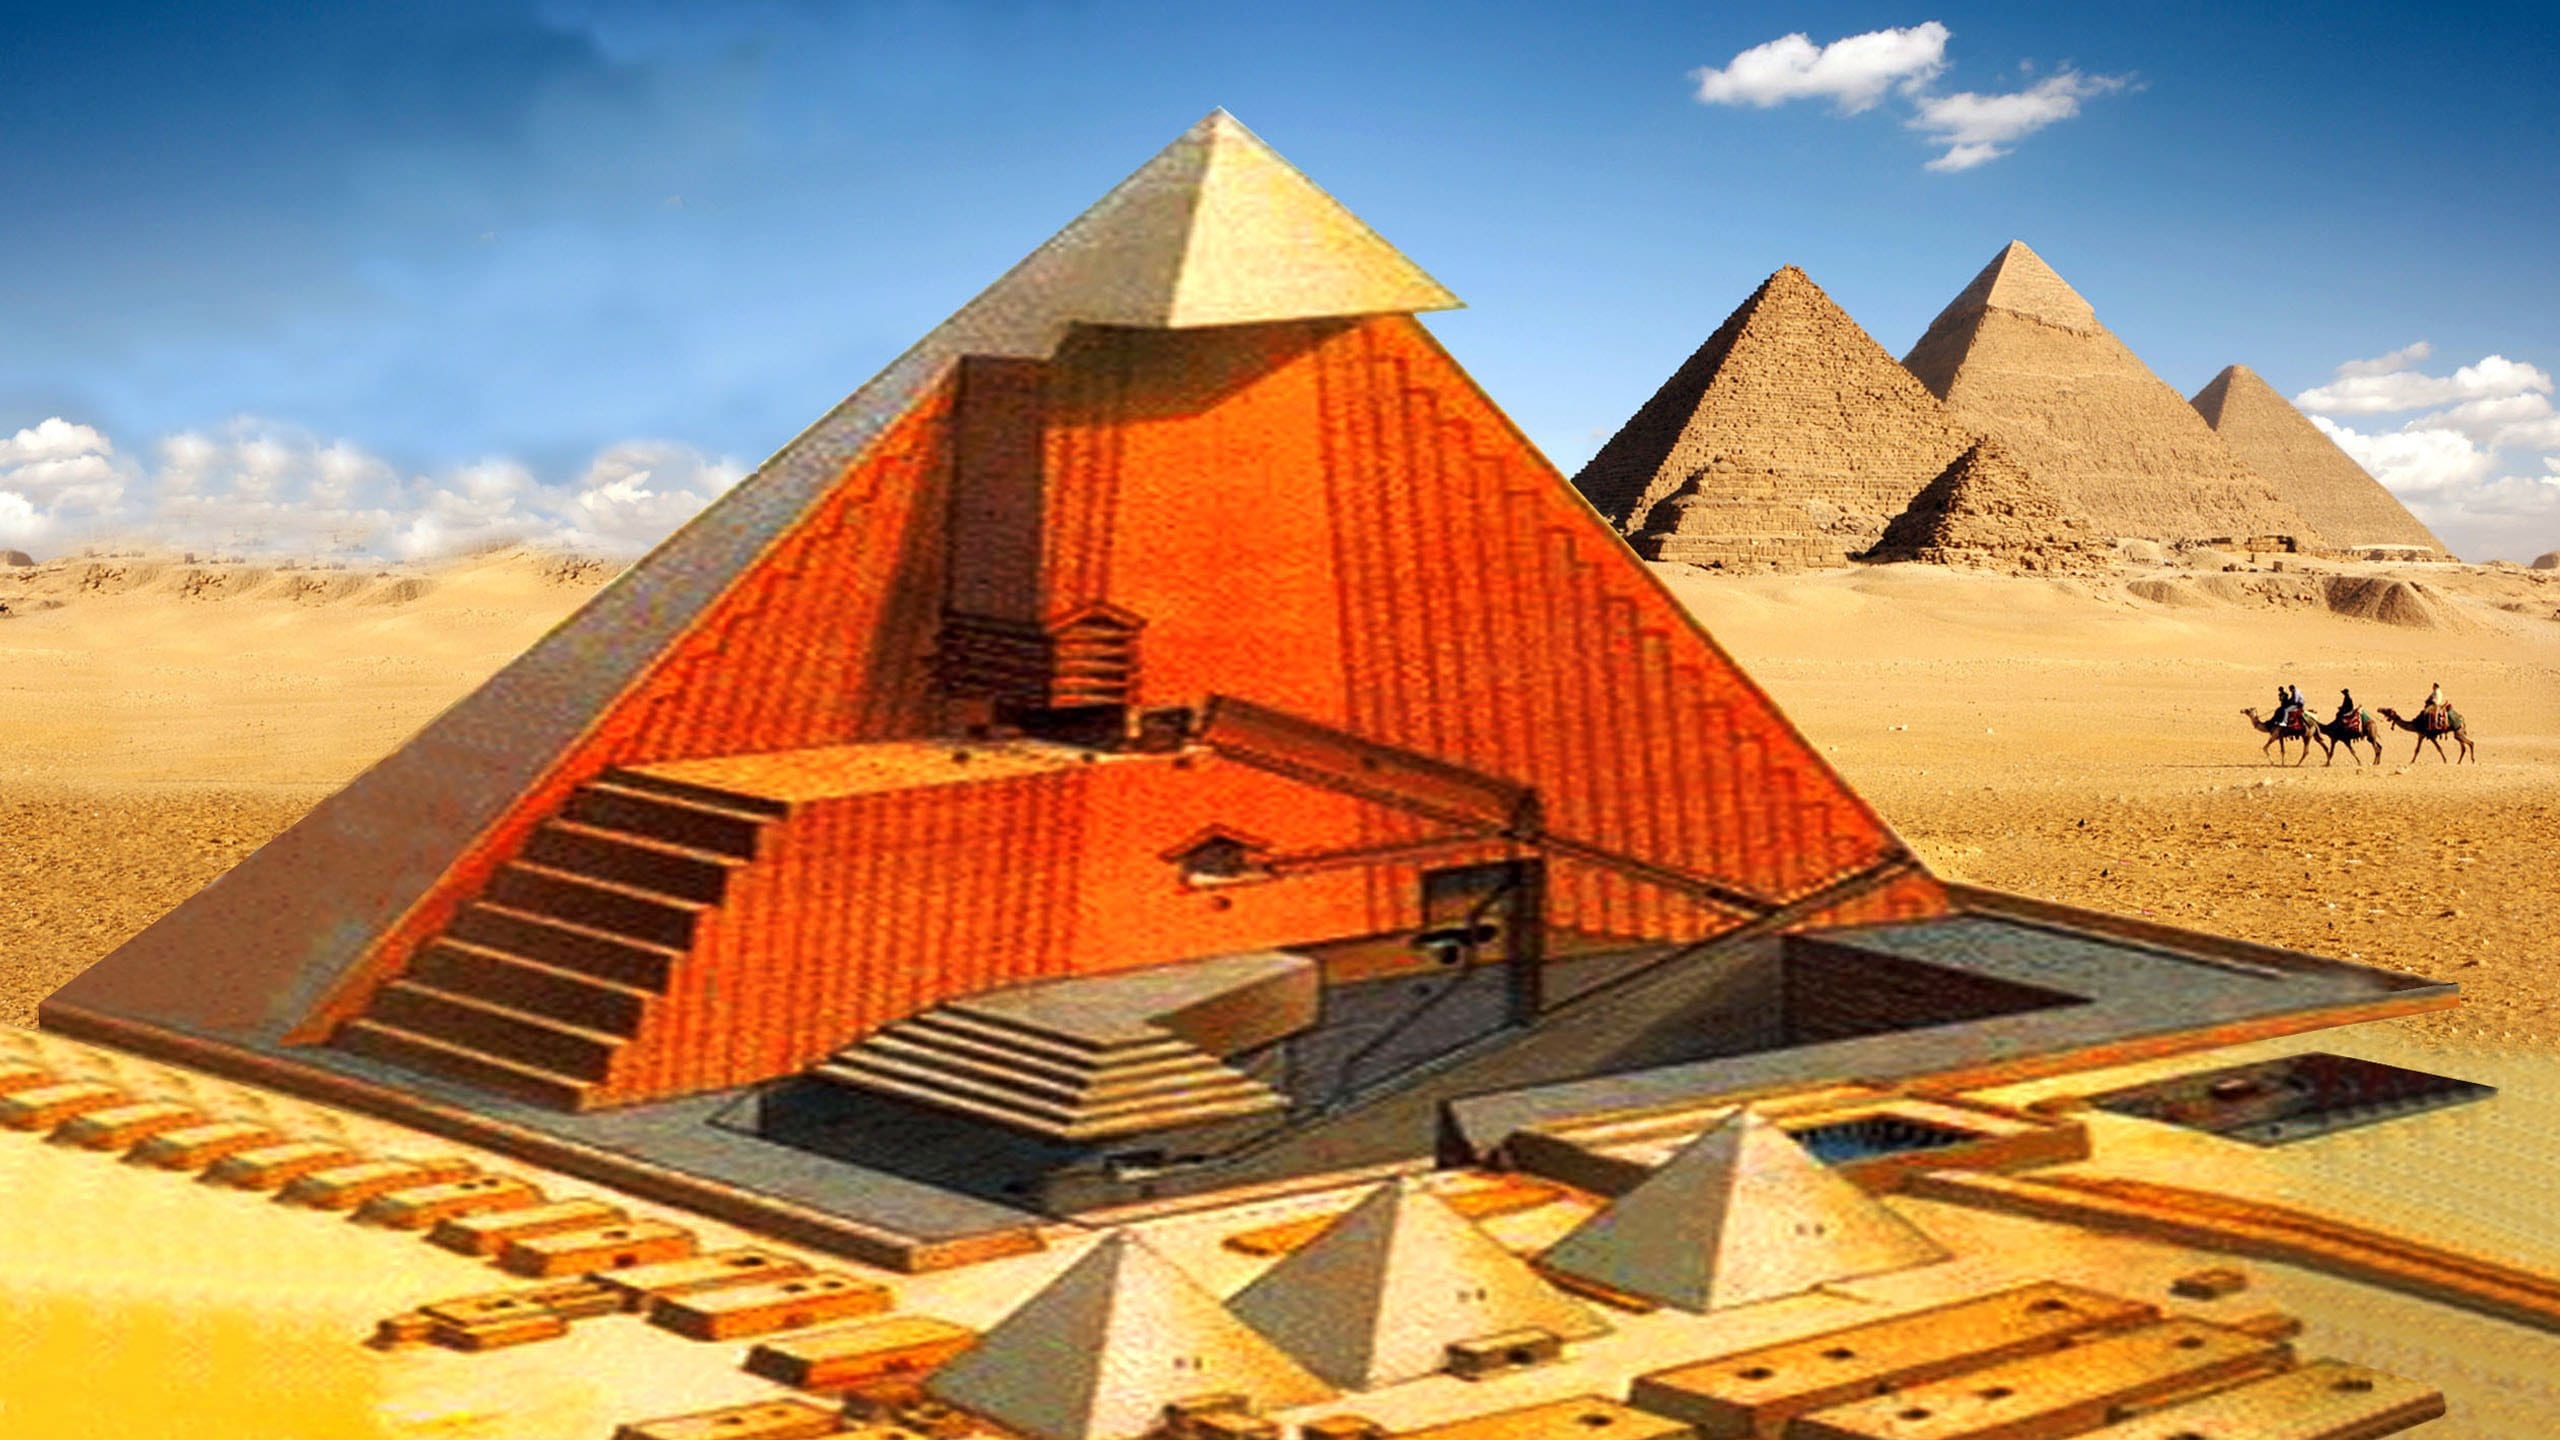 Страж египетской пирамиды. : Пирамида Хеопса(Великая пирамида. Пирамида Хуфу древний Египет. Пирамида Хеопса, Великая пирамида Гизы. Пирамида Хеопса (Хуфу).